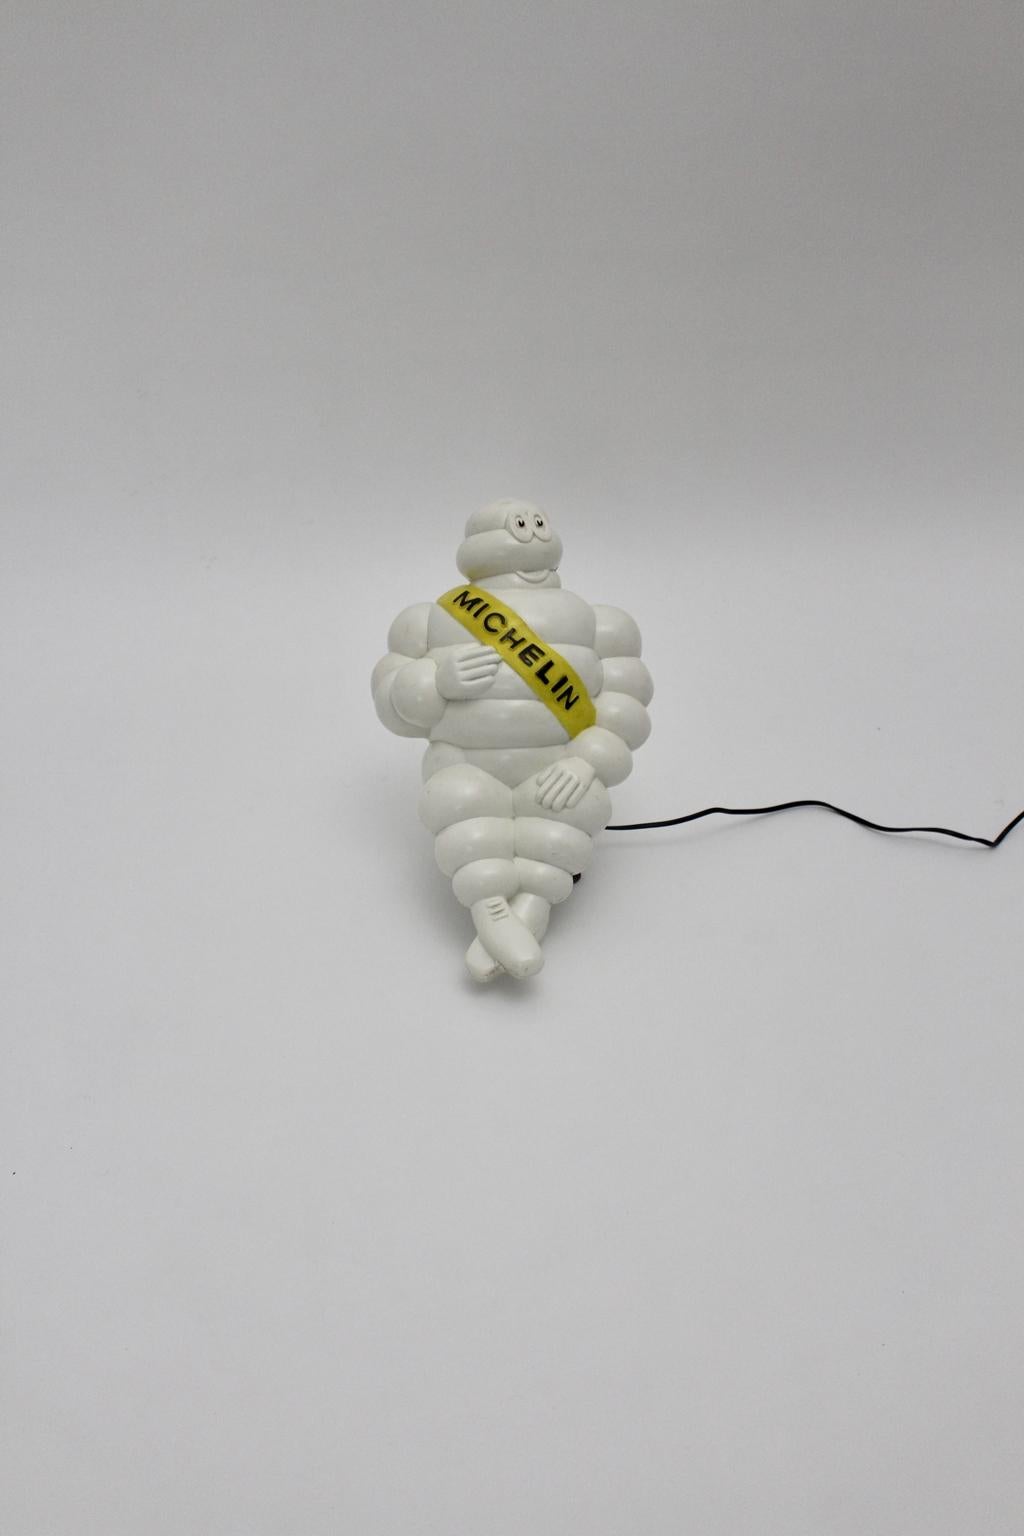 Space Age vintage weiß Bibendum Michelin Werbeschild aus Kunststoff 1960er Jahre Frankreich. Die Michelin-Männchen-Lampe war aus weißem Kunststoff gefertigt und zeigte ein gelbes Band mit dem schwarzen Michelin-Emblem quer über den Körper.
Die